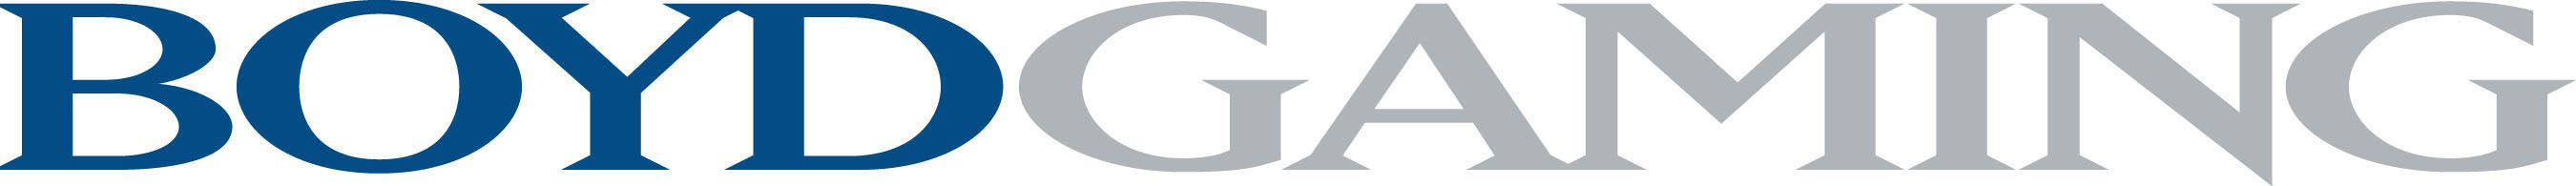 Boyd Gaming logo.